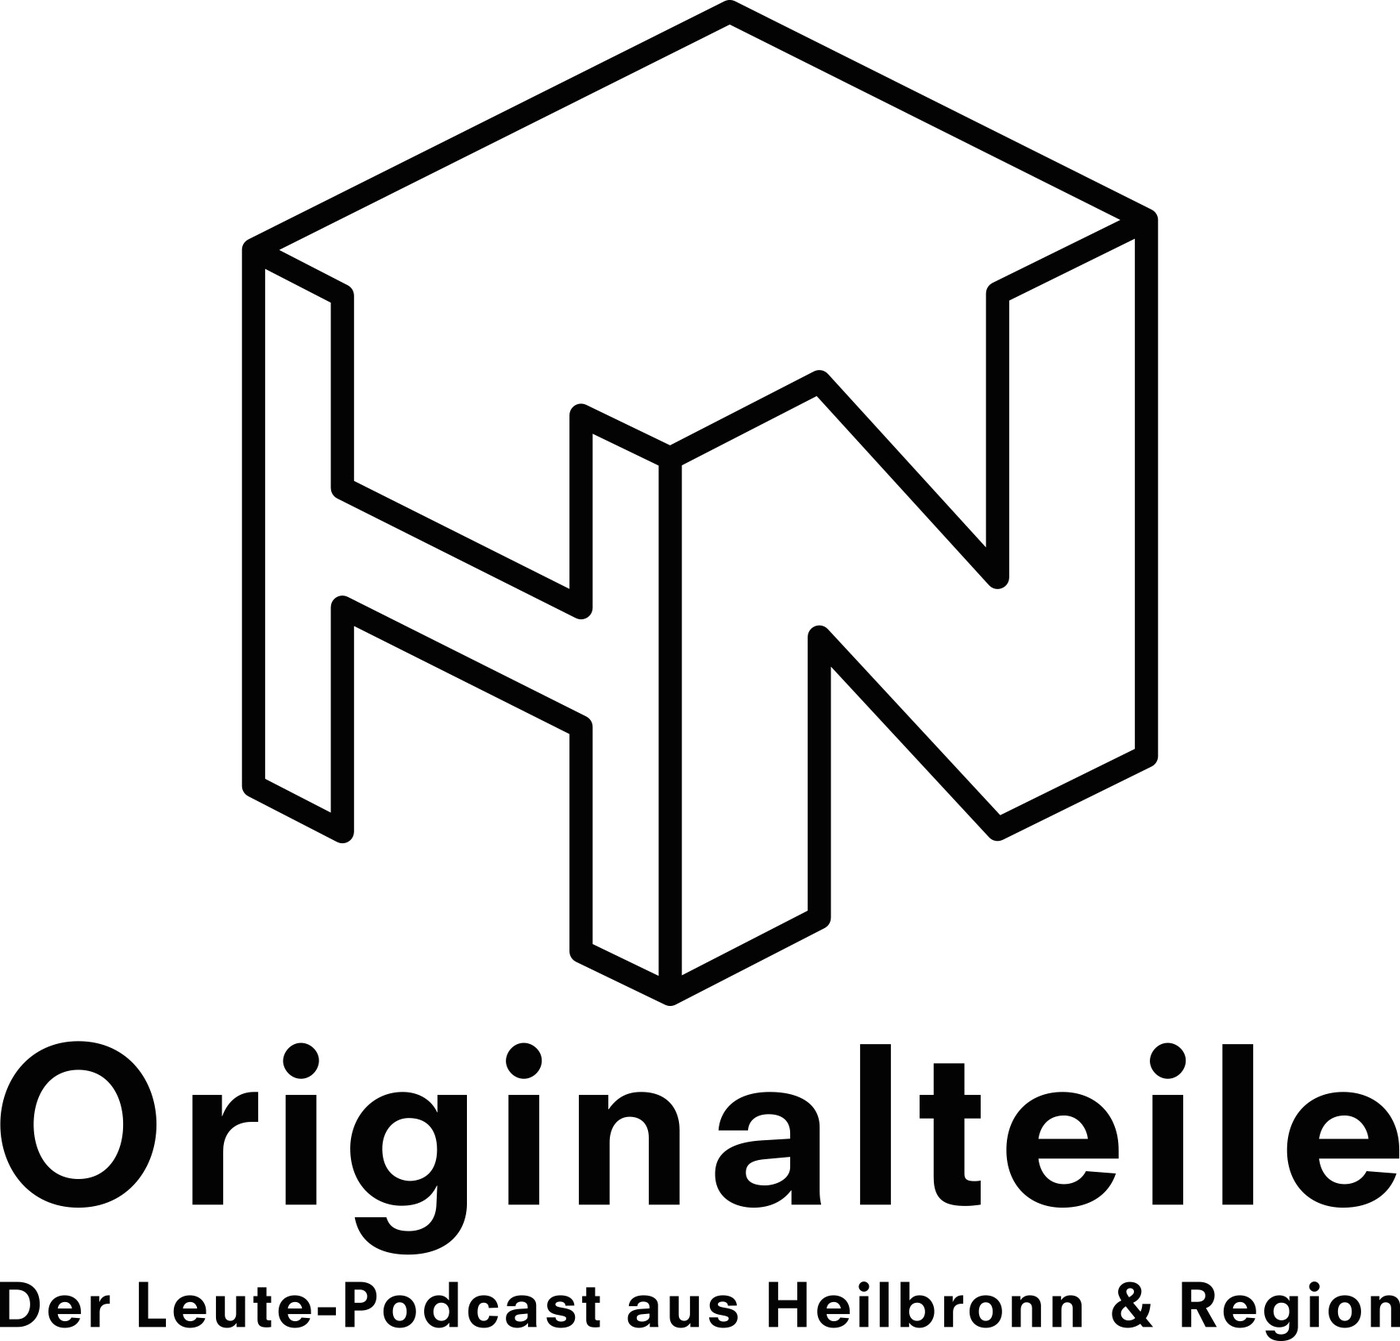 Originalteile - Der Leute-Podcast aus Heilbronn & Region